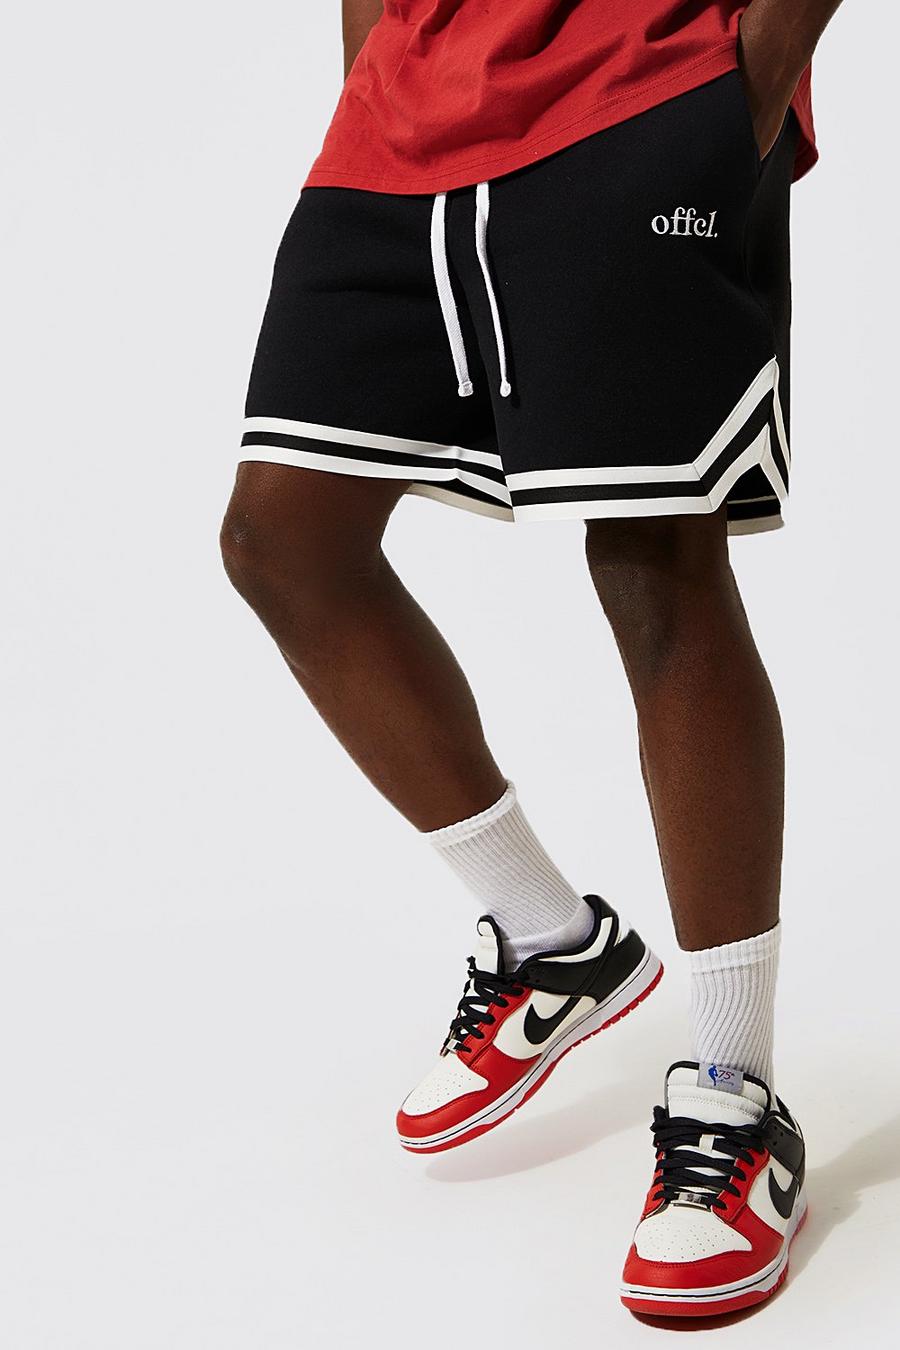 Kurze Official Basketball-Shorts mit Streifen, Black schwarz